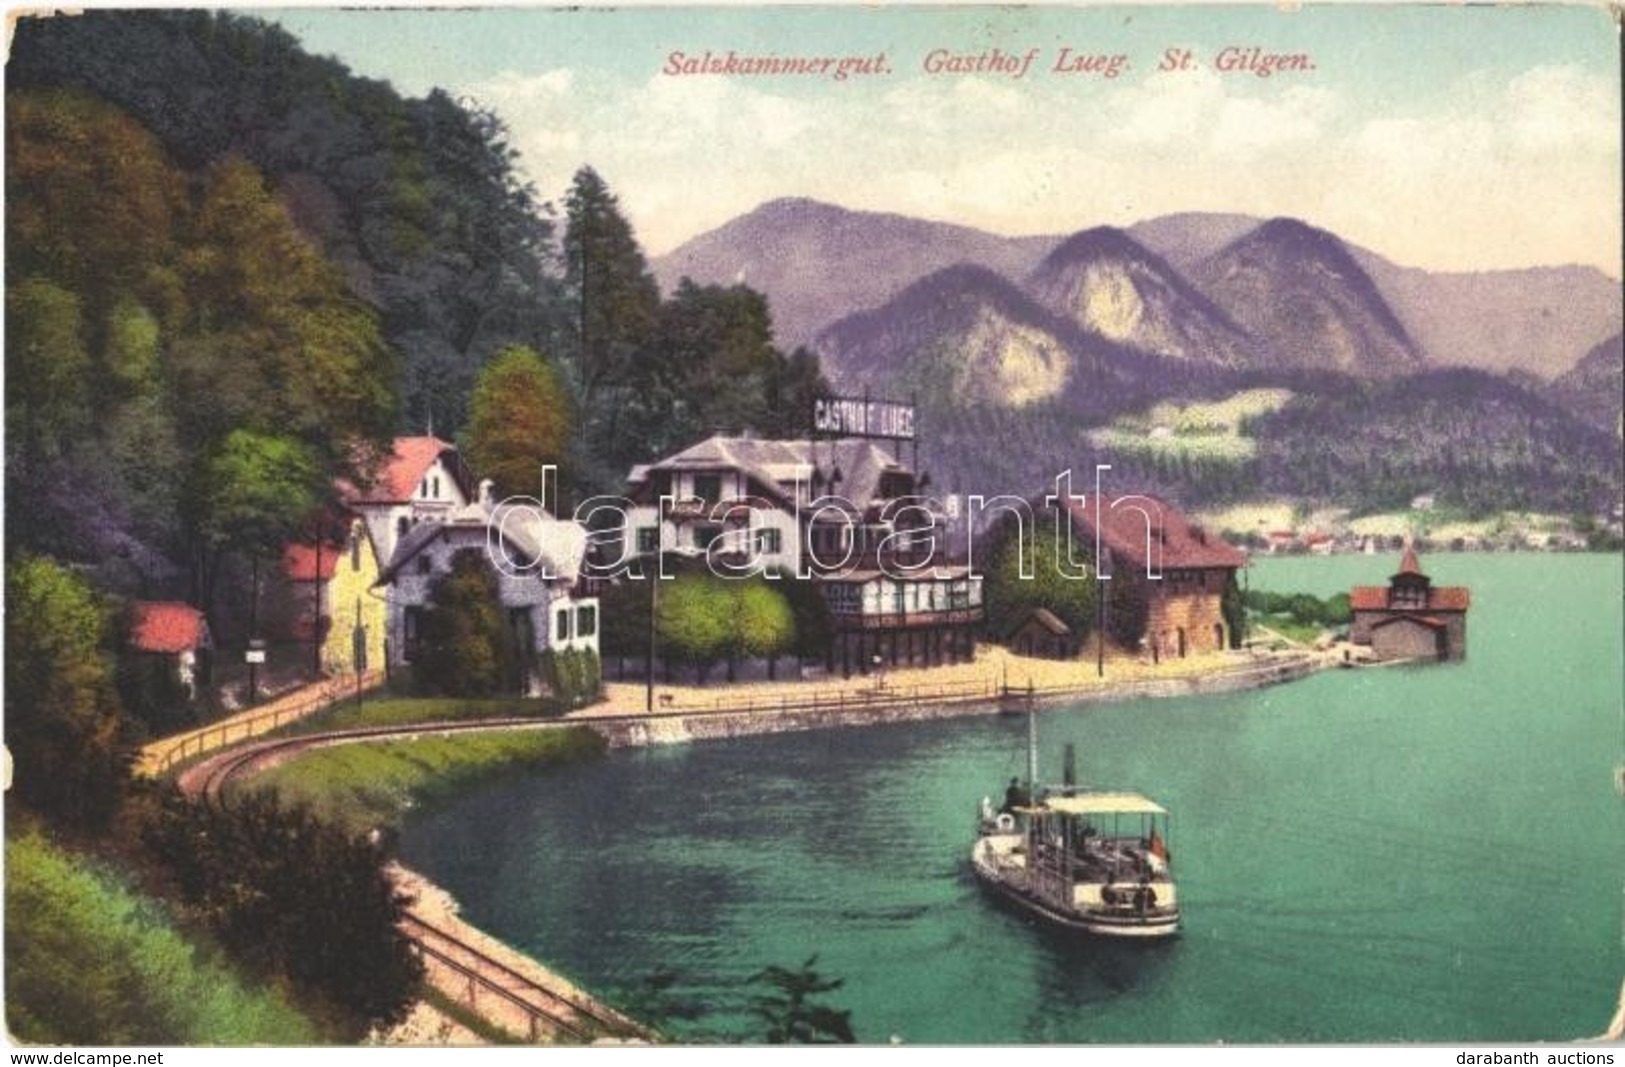 T2/T3 1918 St. Gilgen, Sankt Gilgen, Salzkammergut, Gasthof Lueg / Lake, Hotel, Boat - Ohne Zuordnung